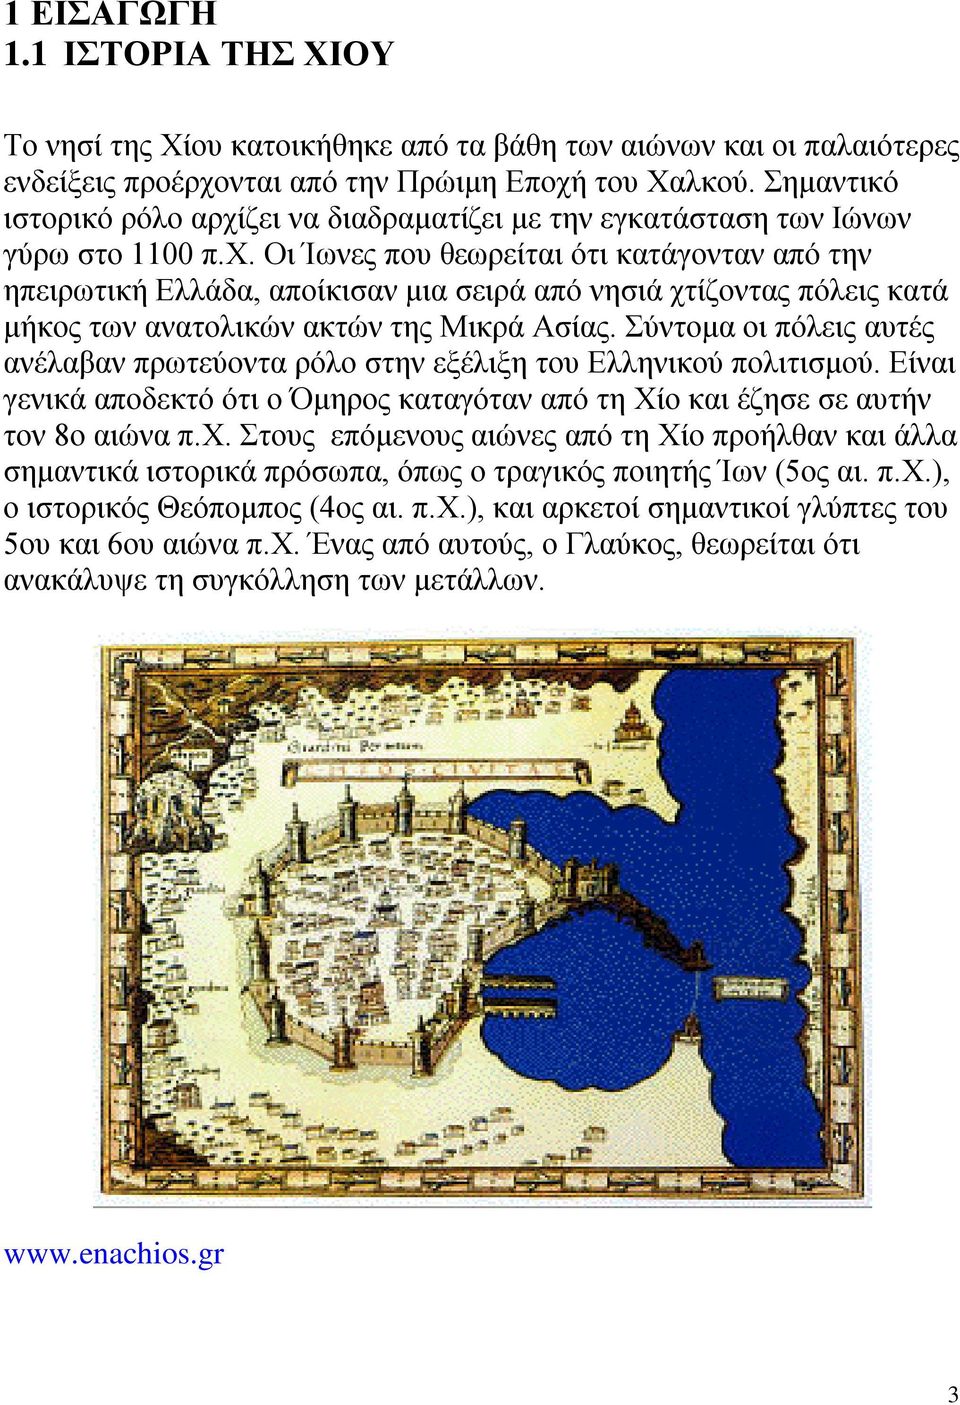 Σύντομα οι πόλεις αυτές ανέλαβαν πρωτεύοντα ρόλο στην εξέλιξη του Ελληνικού πολιτισμού. Είναι γενικά αποδεκτό ότι ο Όμηρος καταγόταν από τη Χίο και έζησε σε αυτήν τον 8ο αιώνα π.χ.